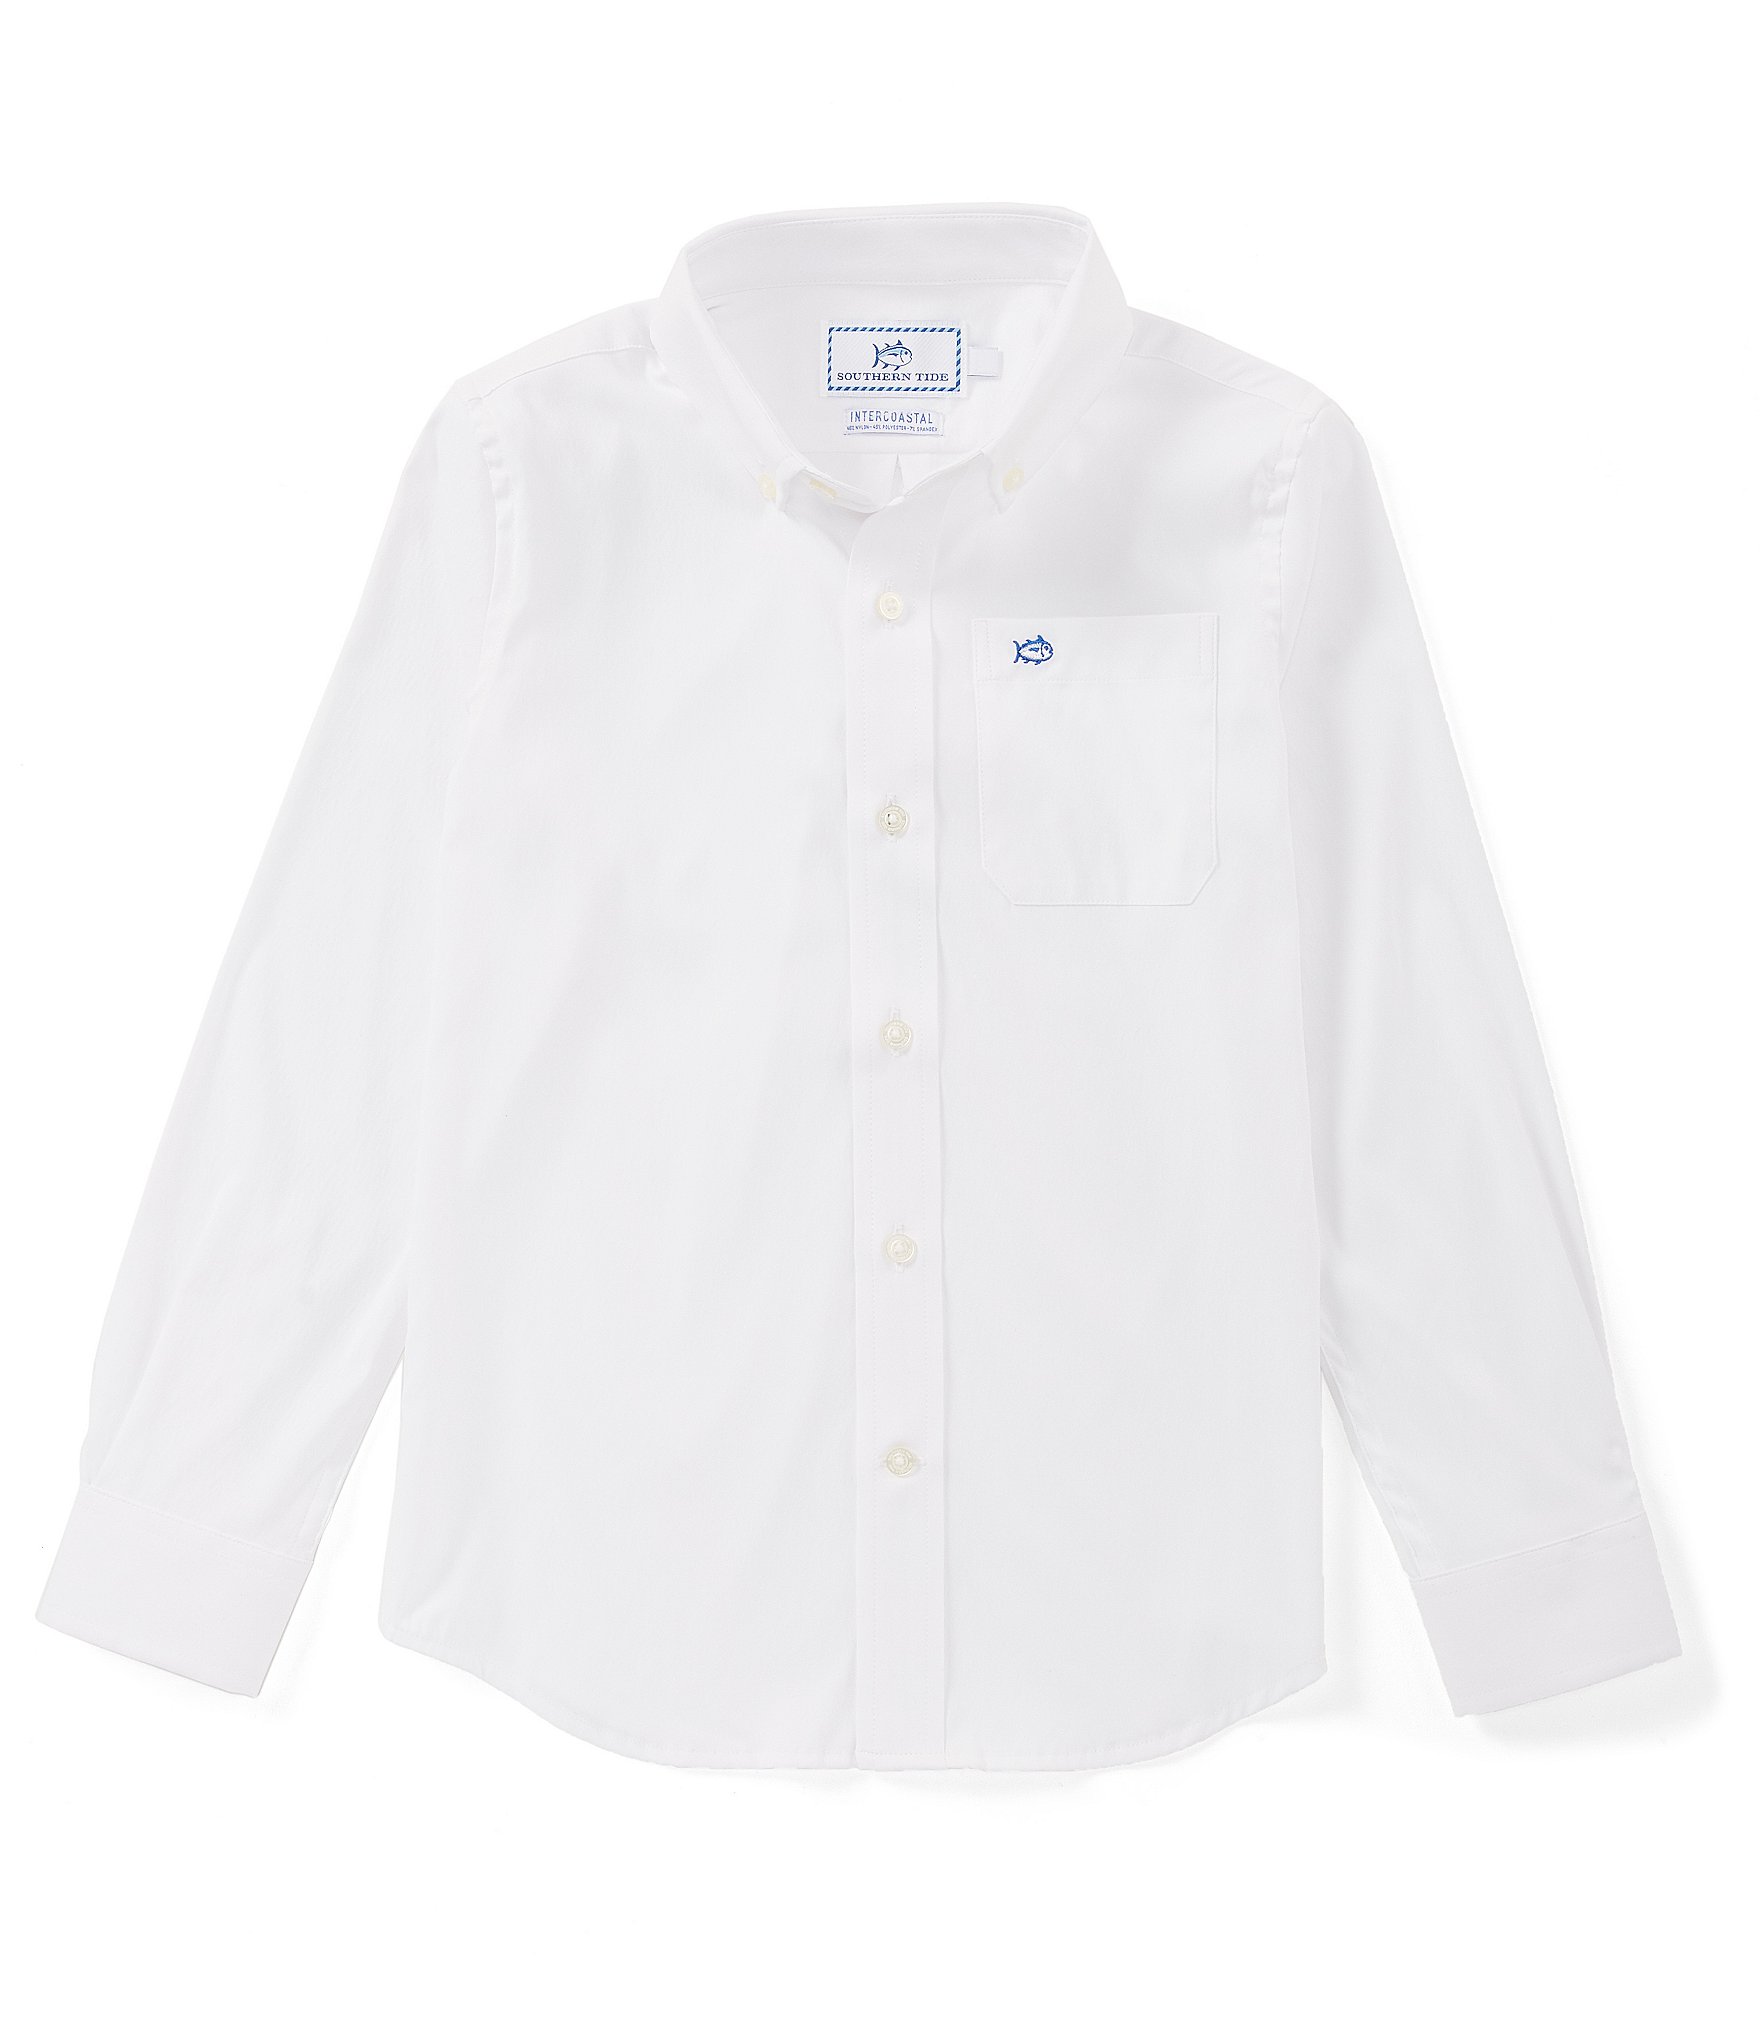 White Boys' Dress Shirts ☀ Pants 2T-7 ...